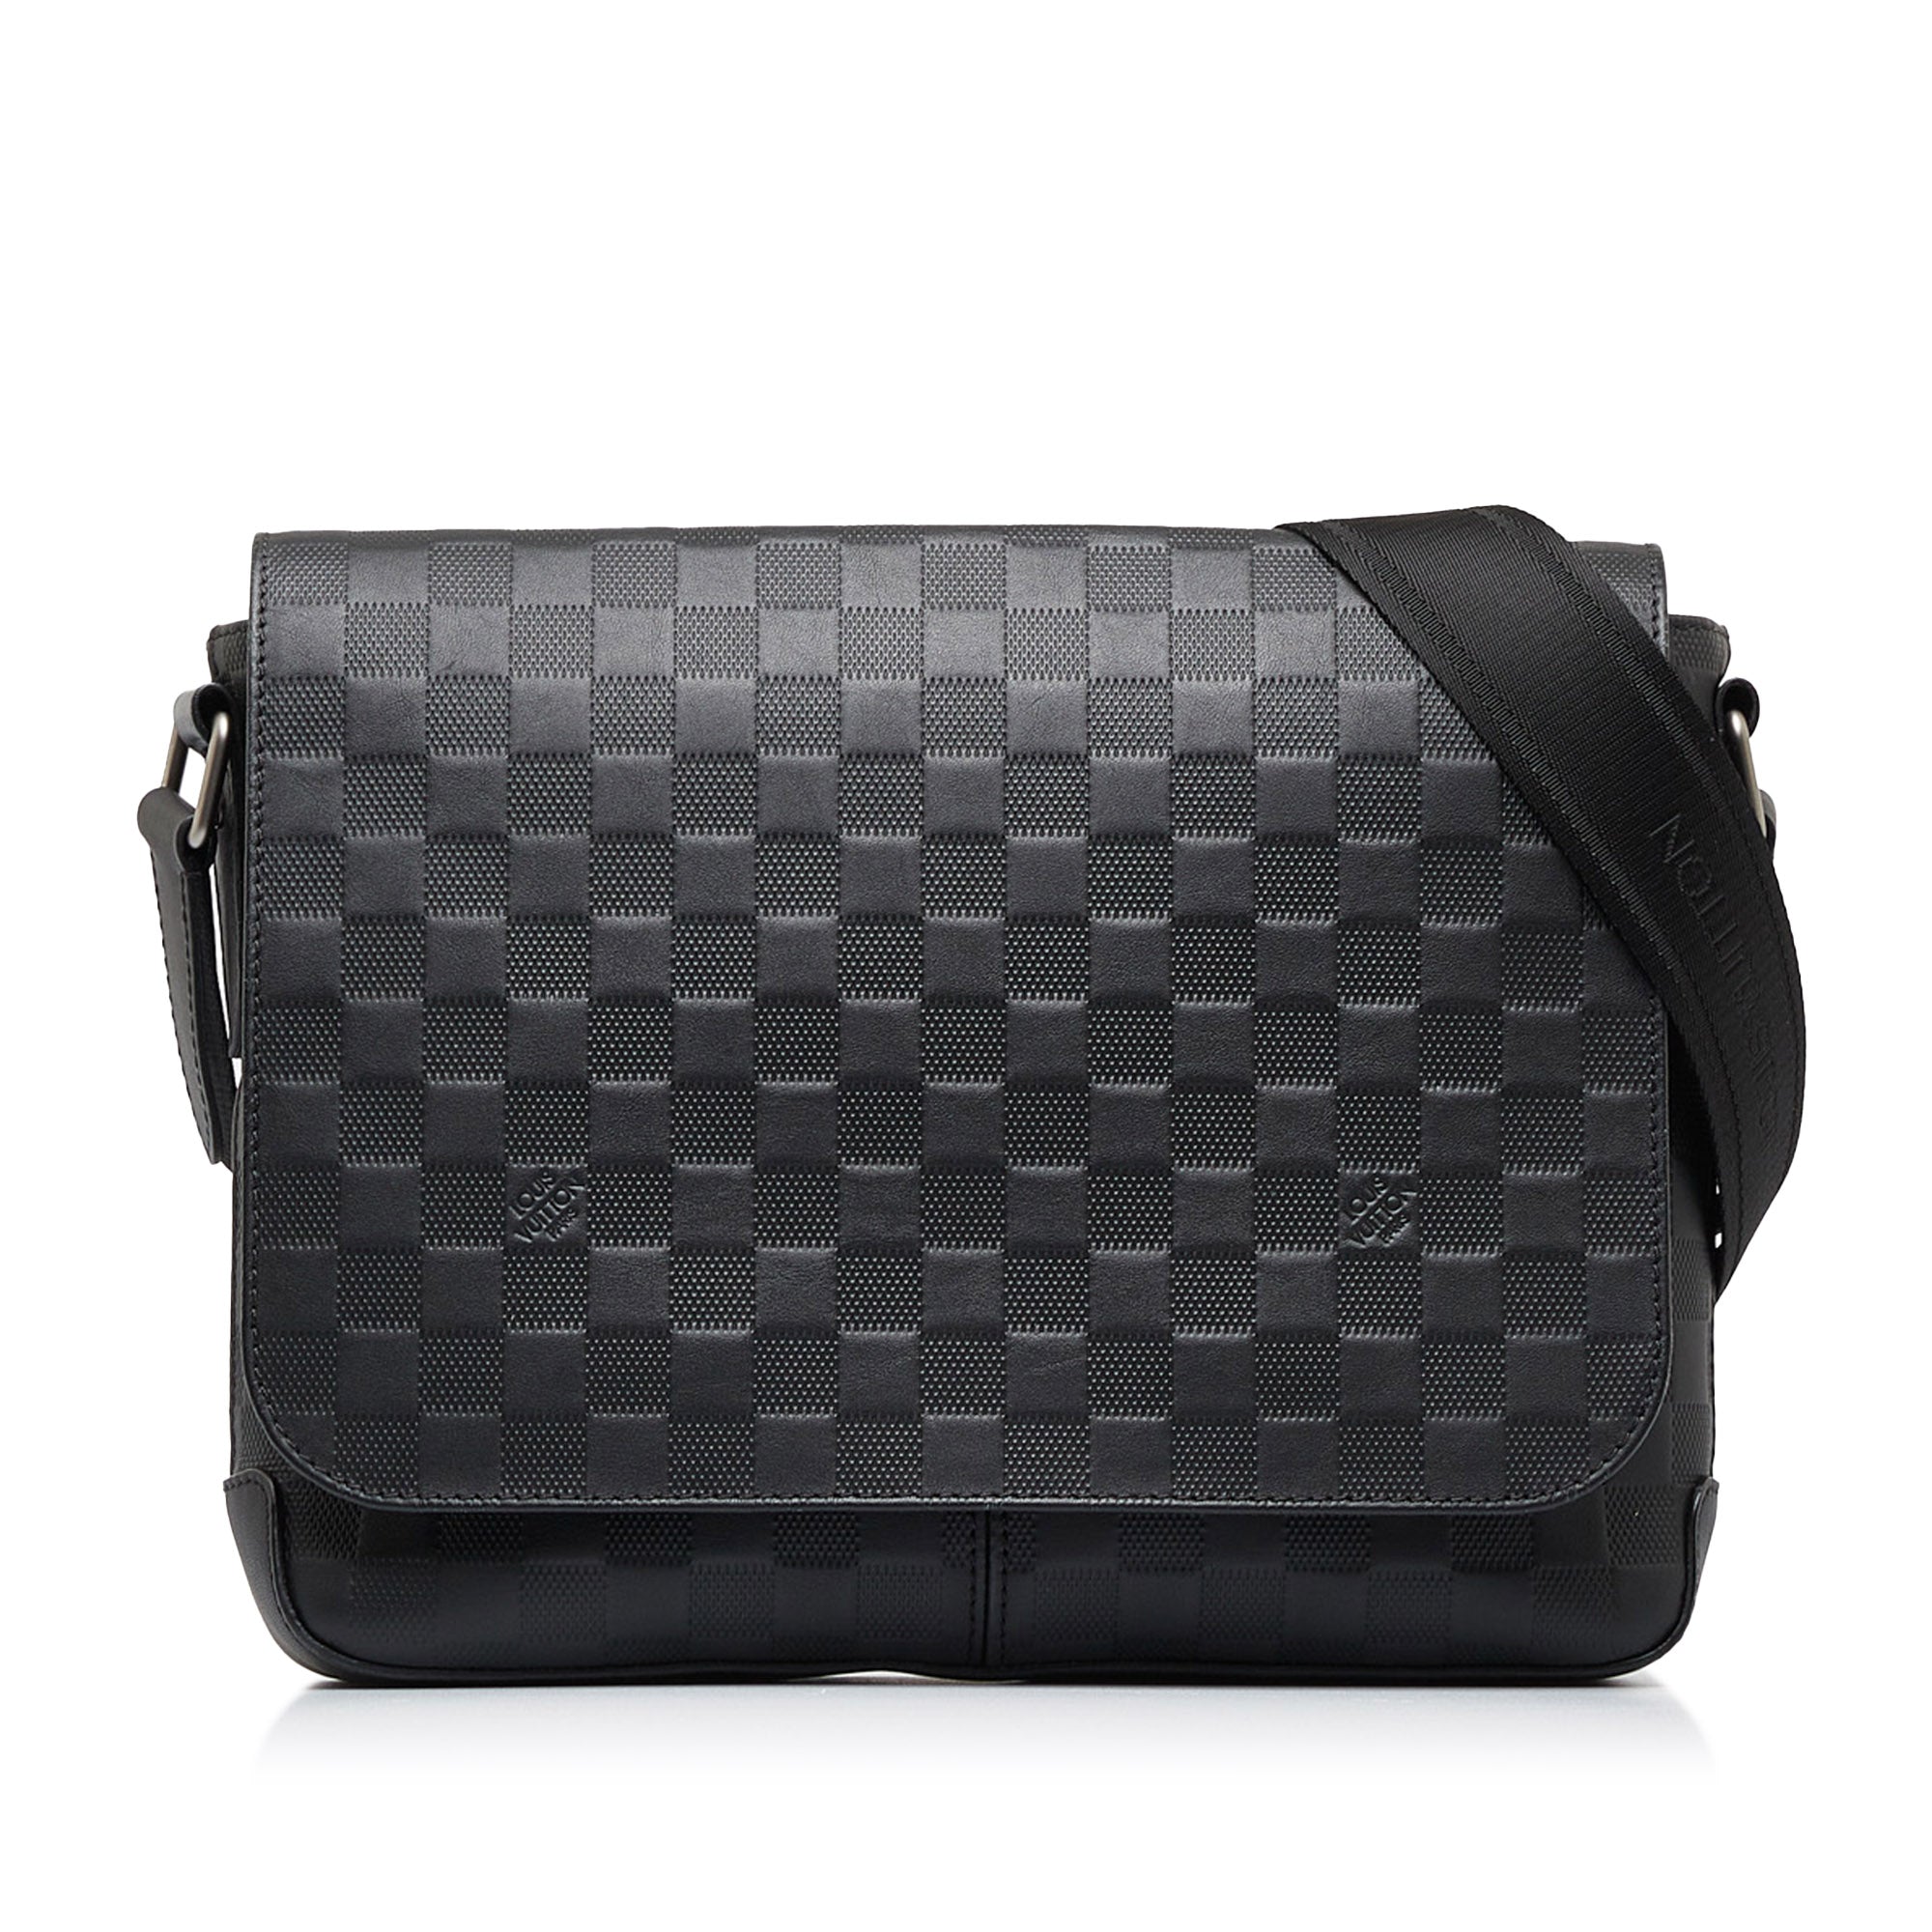 Louis Vuitton District Pm Messenger Bag - clothing & accessories